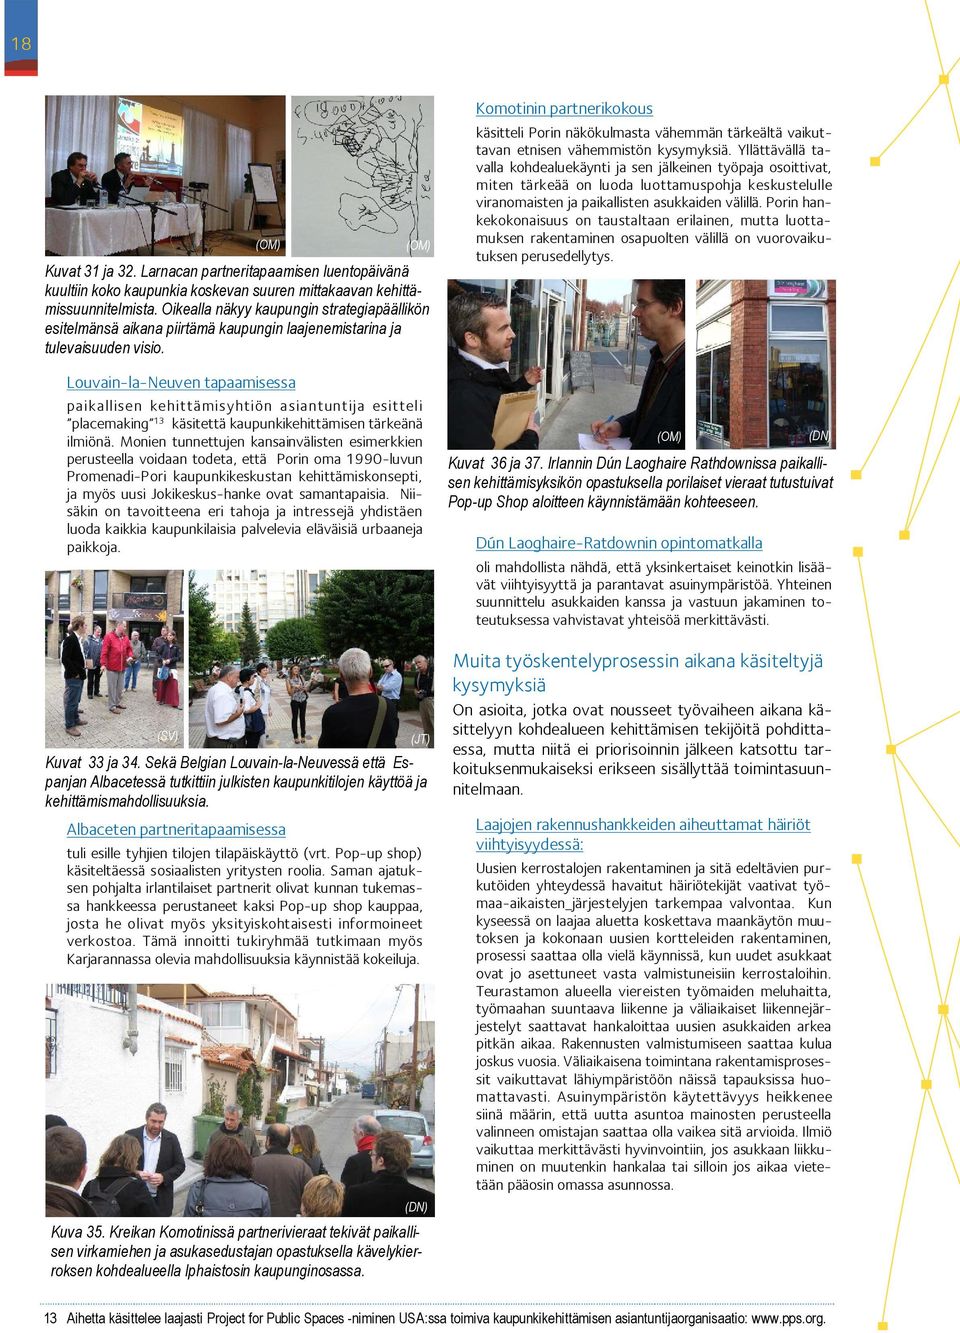 Louvain-la-Neuven tapaamisessa paikallisen kehittämisyhtiön asiantuntija esitteli placemaking 13 käsitettä kaupunkikehittämisen tärkeänä ilmiönä.